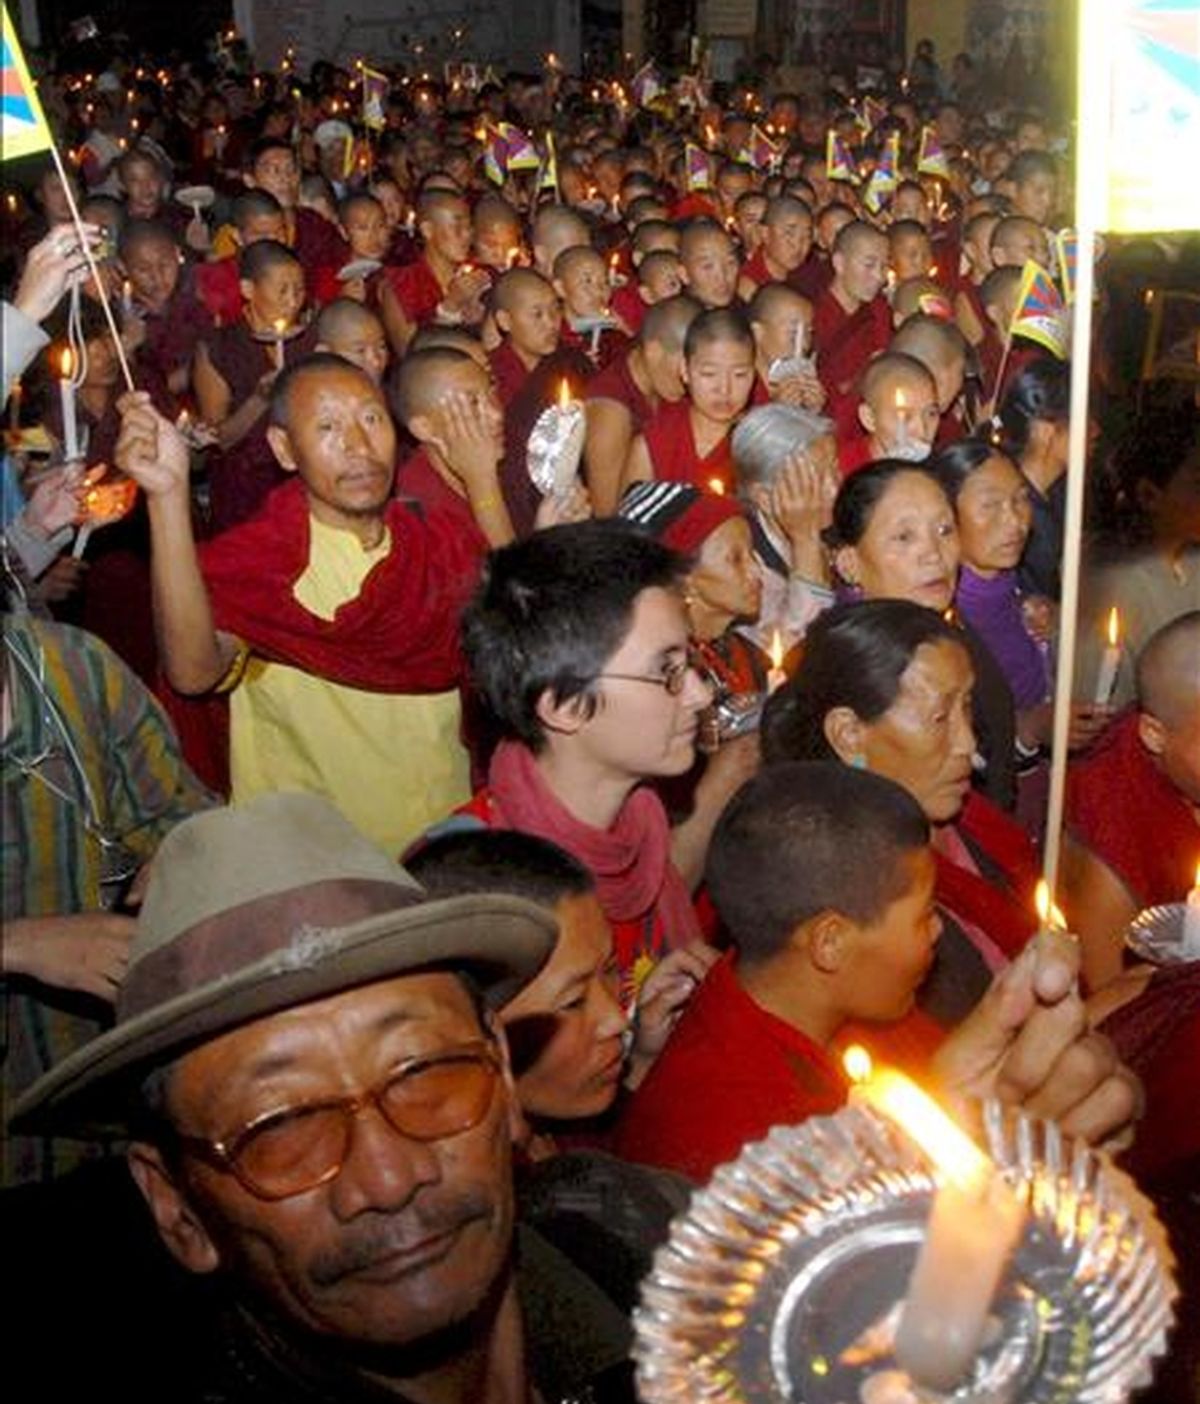 Miles de tibetanos protestan y gritan consignas anti Chinas durante una manifestación en el área dominada por los budas tibetanos en Katmandú, Nepal, en marzo de 2008. Miles de tibetanos participaron en una vigilia con velas para protestar por las muertes de tibetanos en Lhasa, China, durante enfrentamientos con la policía. EFE/Archivo